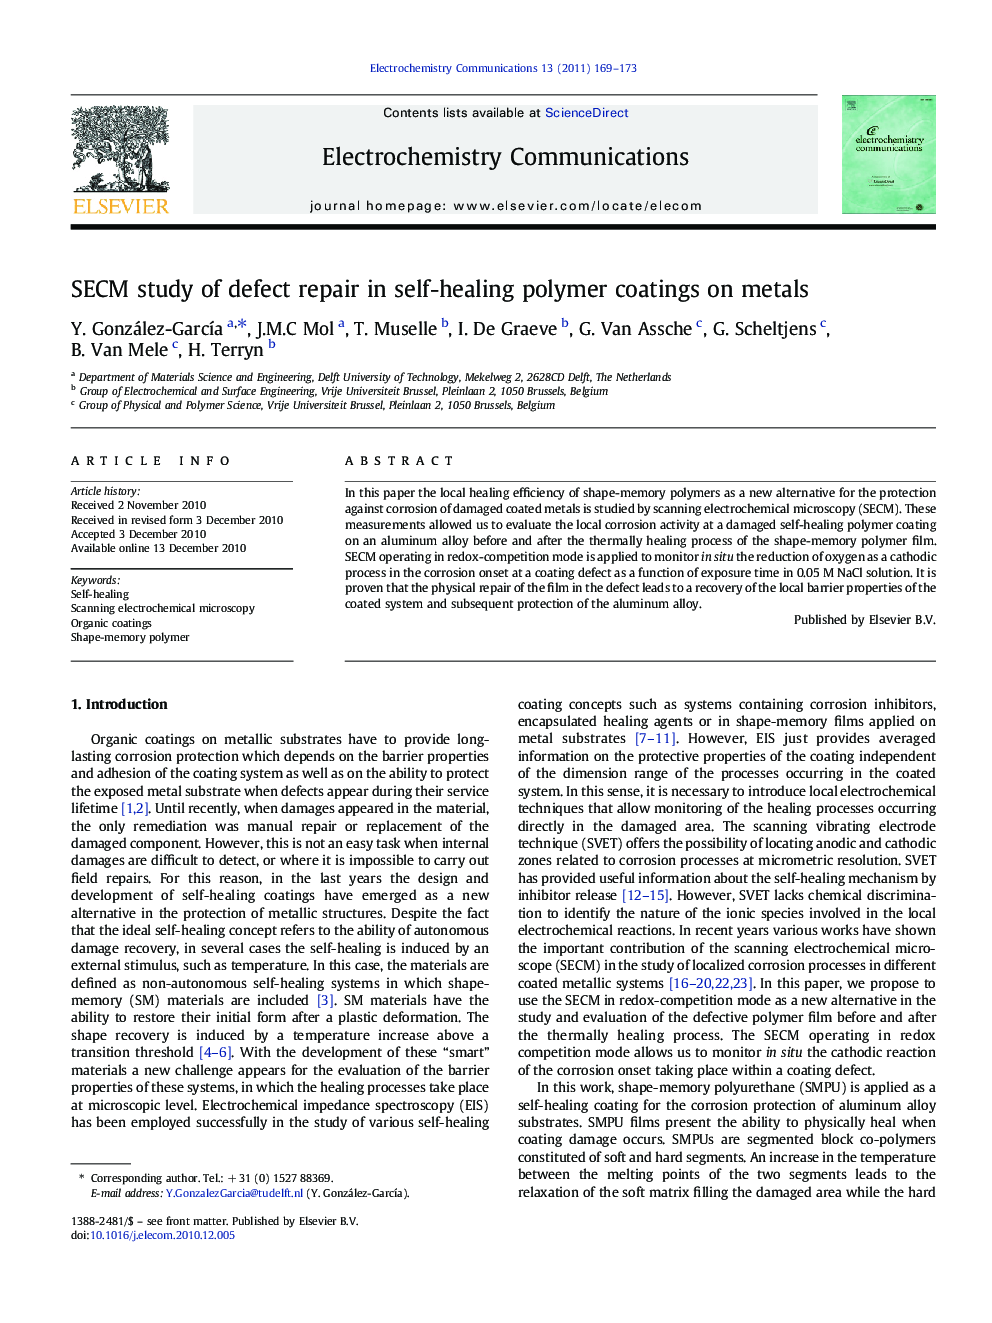 SECM study of defect repair in self-healing polymer coatings on metals